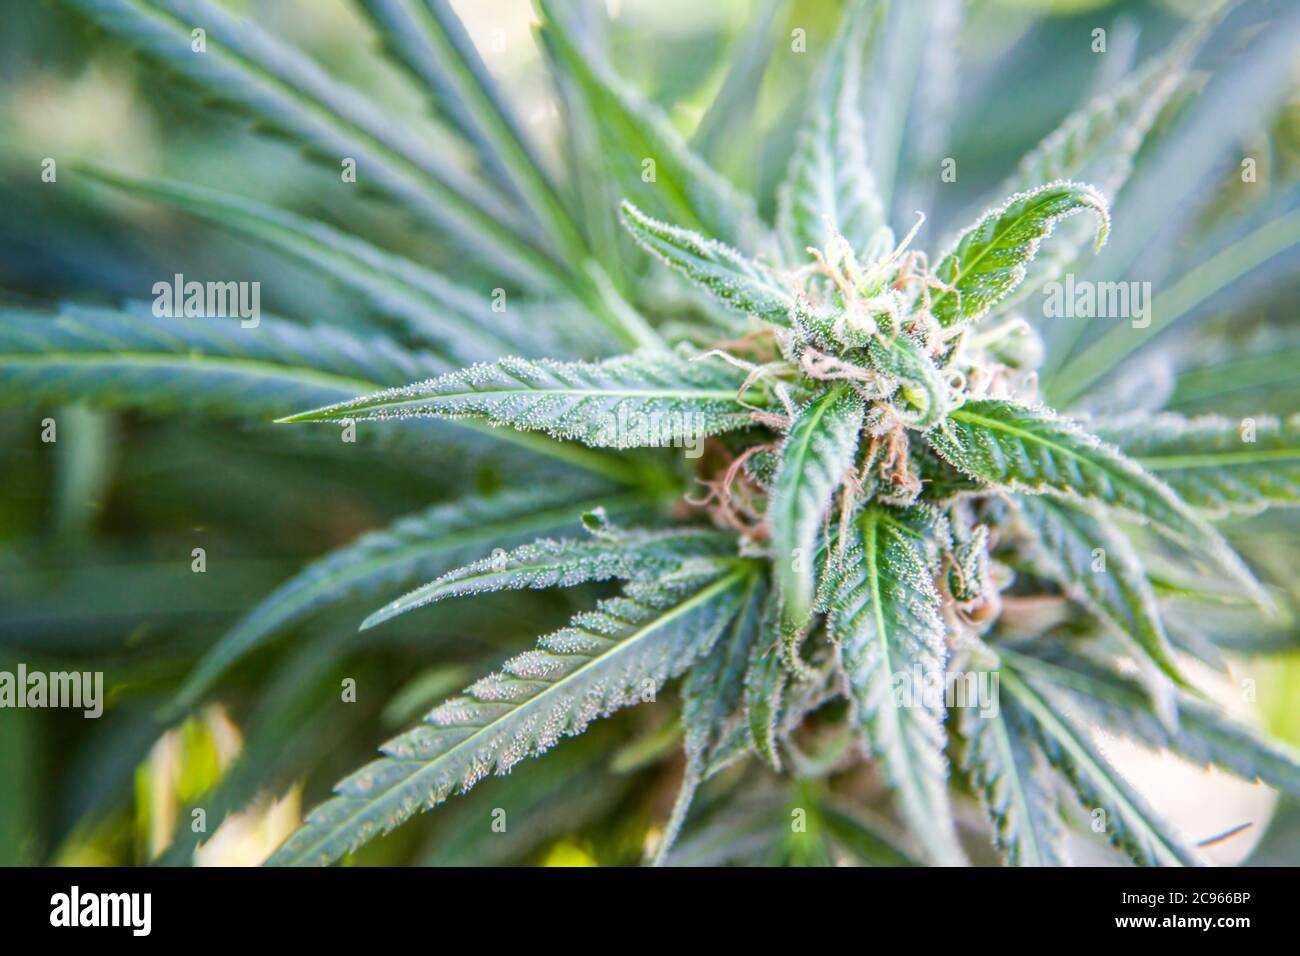 Fleurs de cannabis (Cannabis sativa). Le cannabis contient un groupe de produits chimiques appelés cannabinoïdes, qui produisent un effet narcotique relaxant lorsqu'il est consommé. Banque D'Images